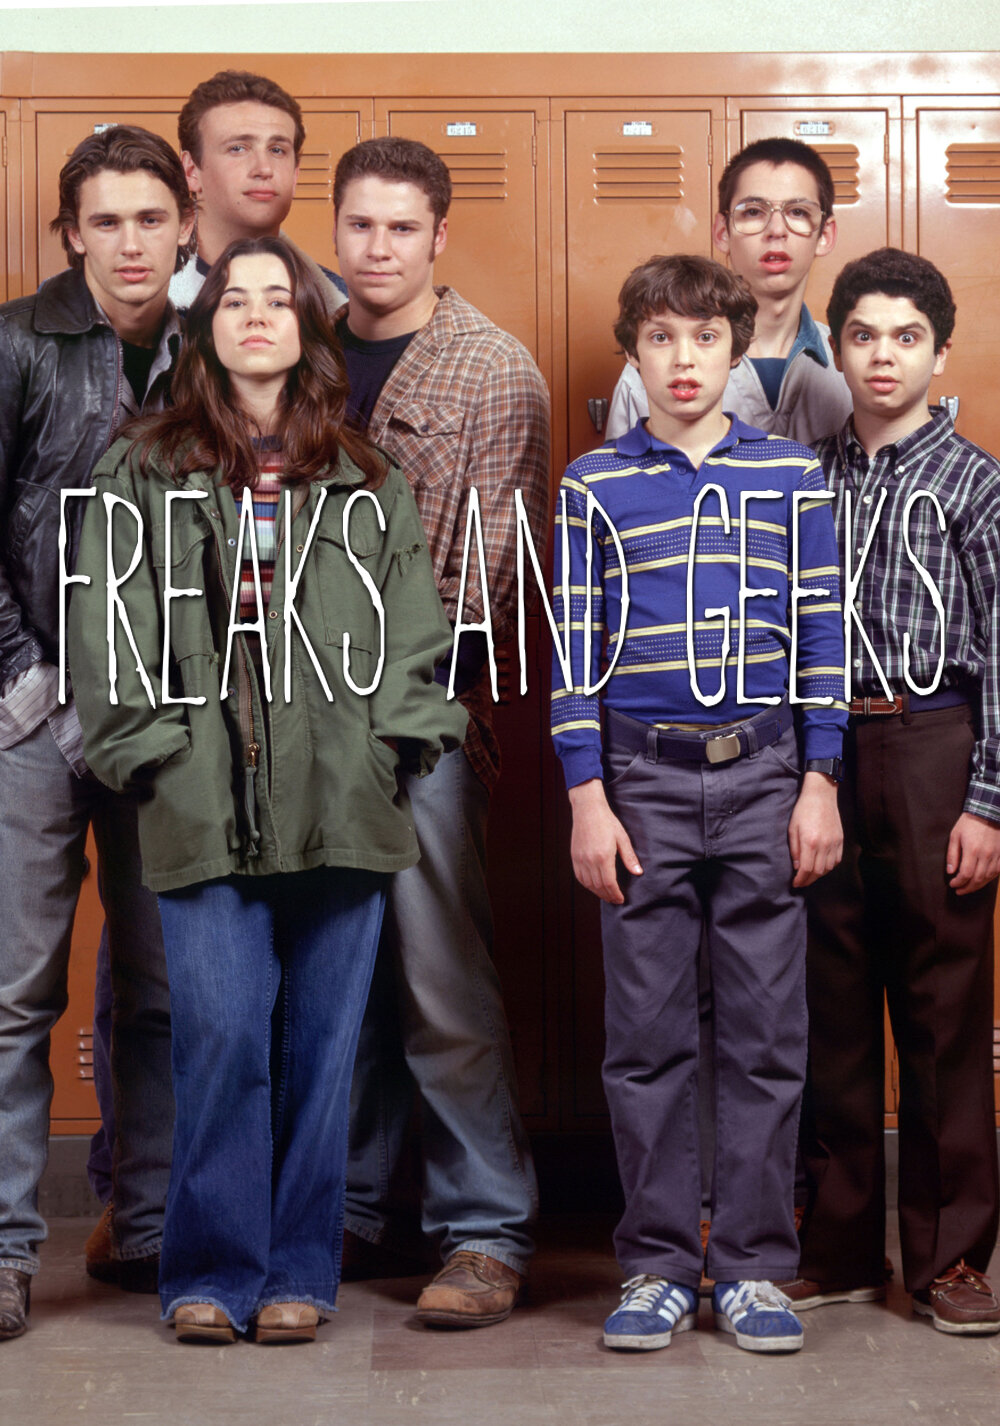 25-2000_Freaks and Geeks.jpg